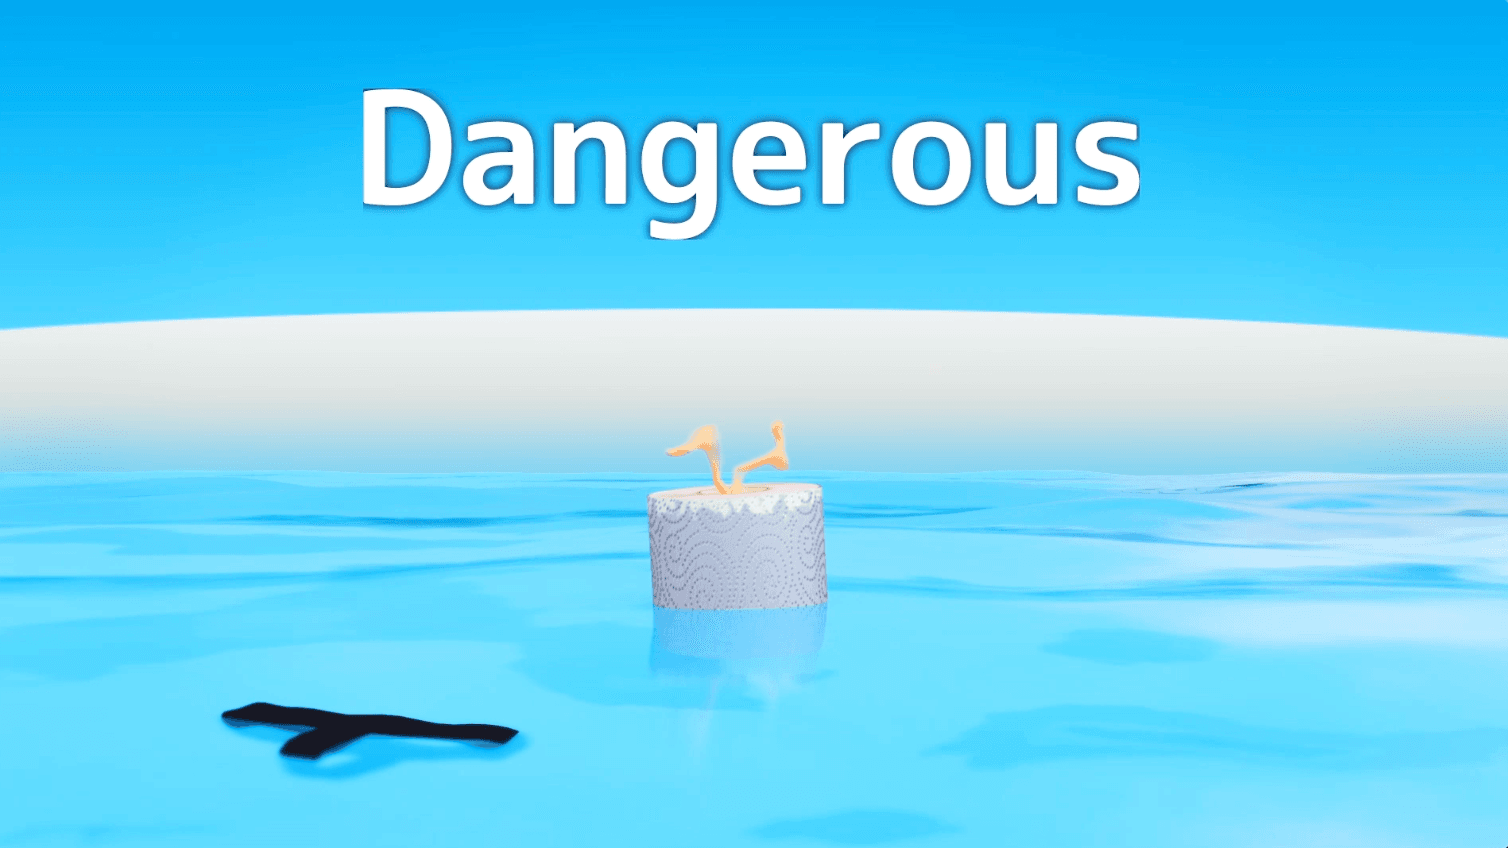 SUMO ROLL#2 "Dangerous"